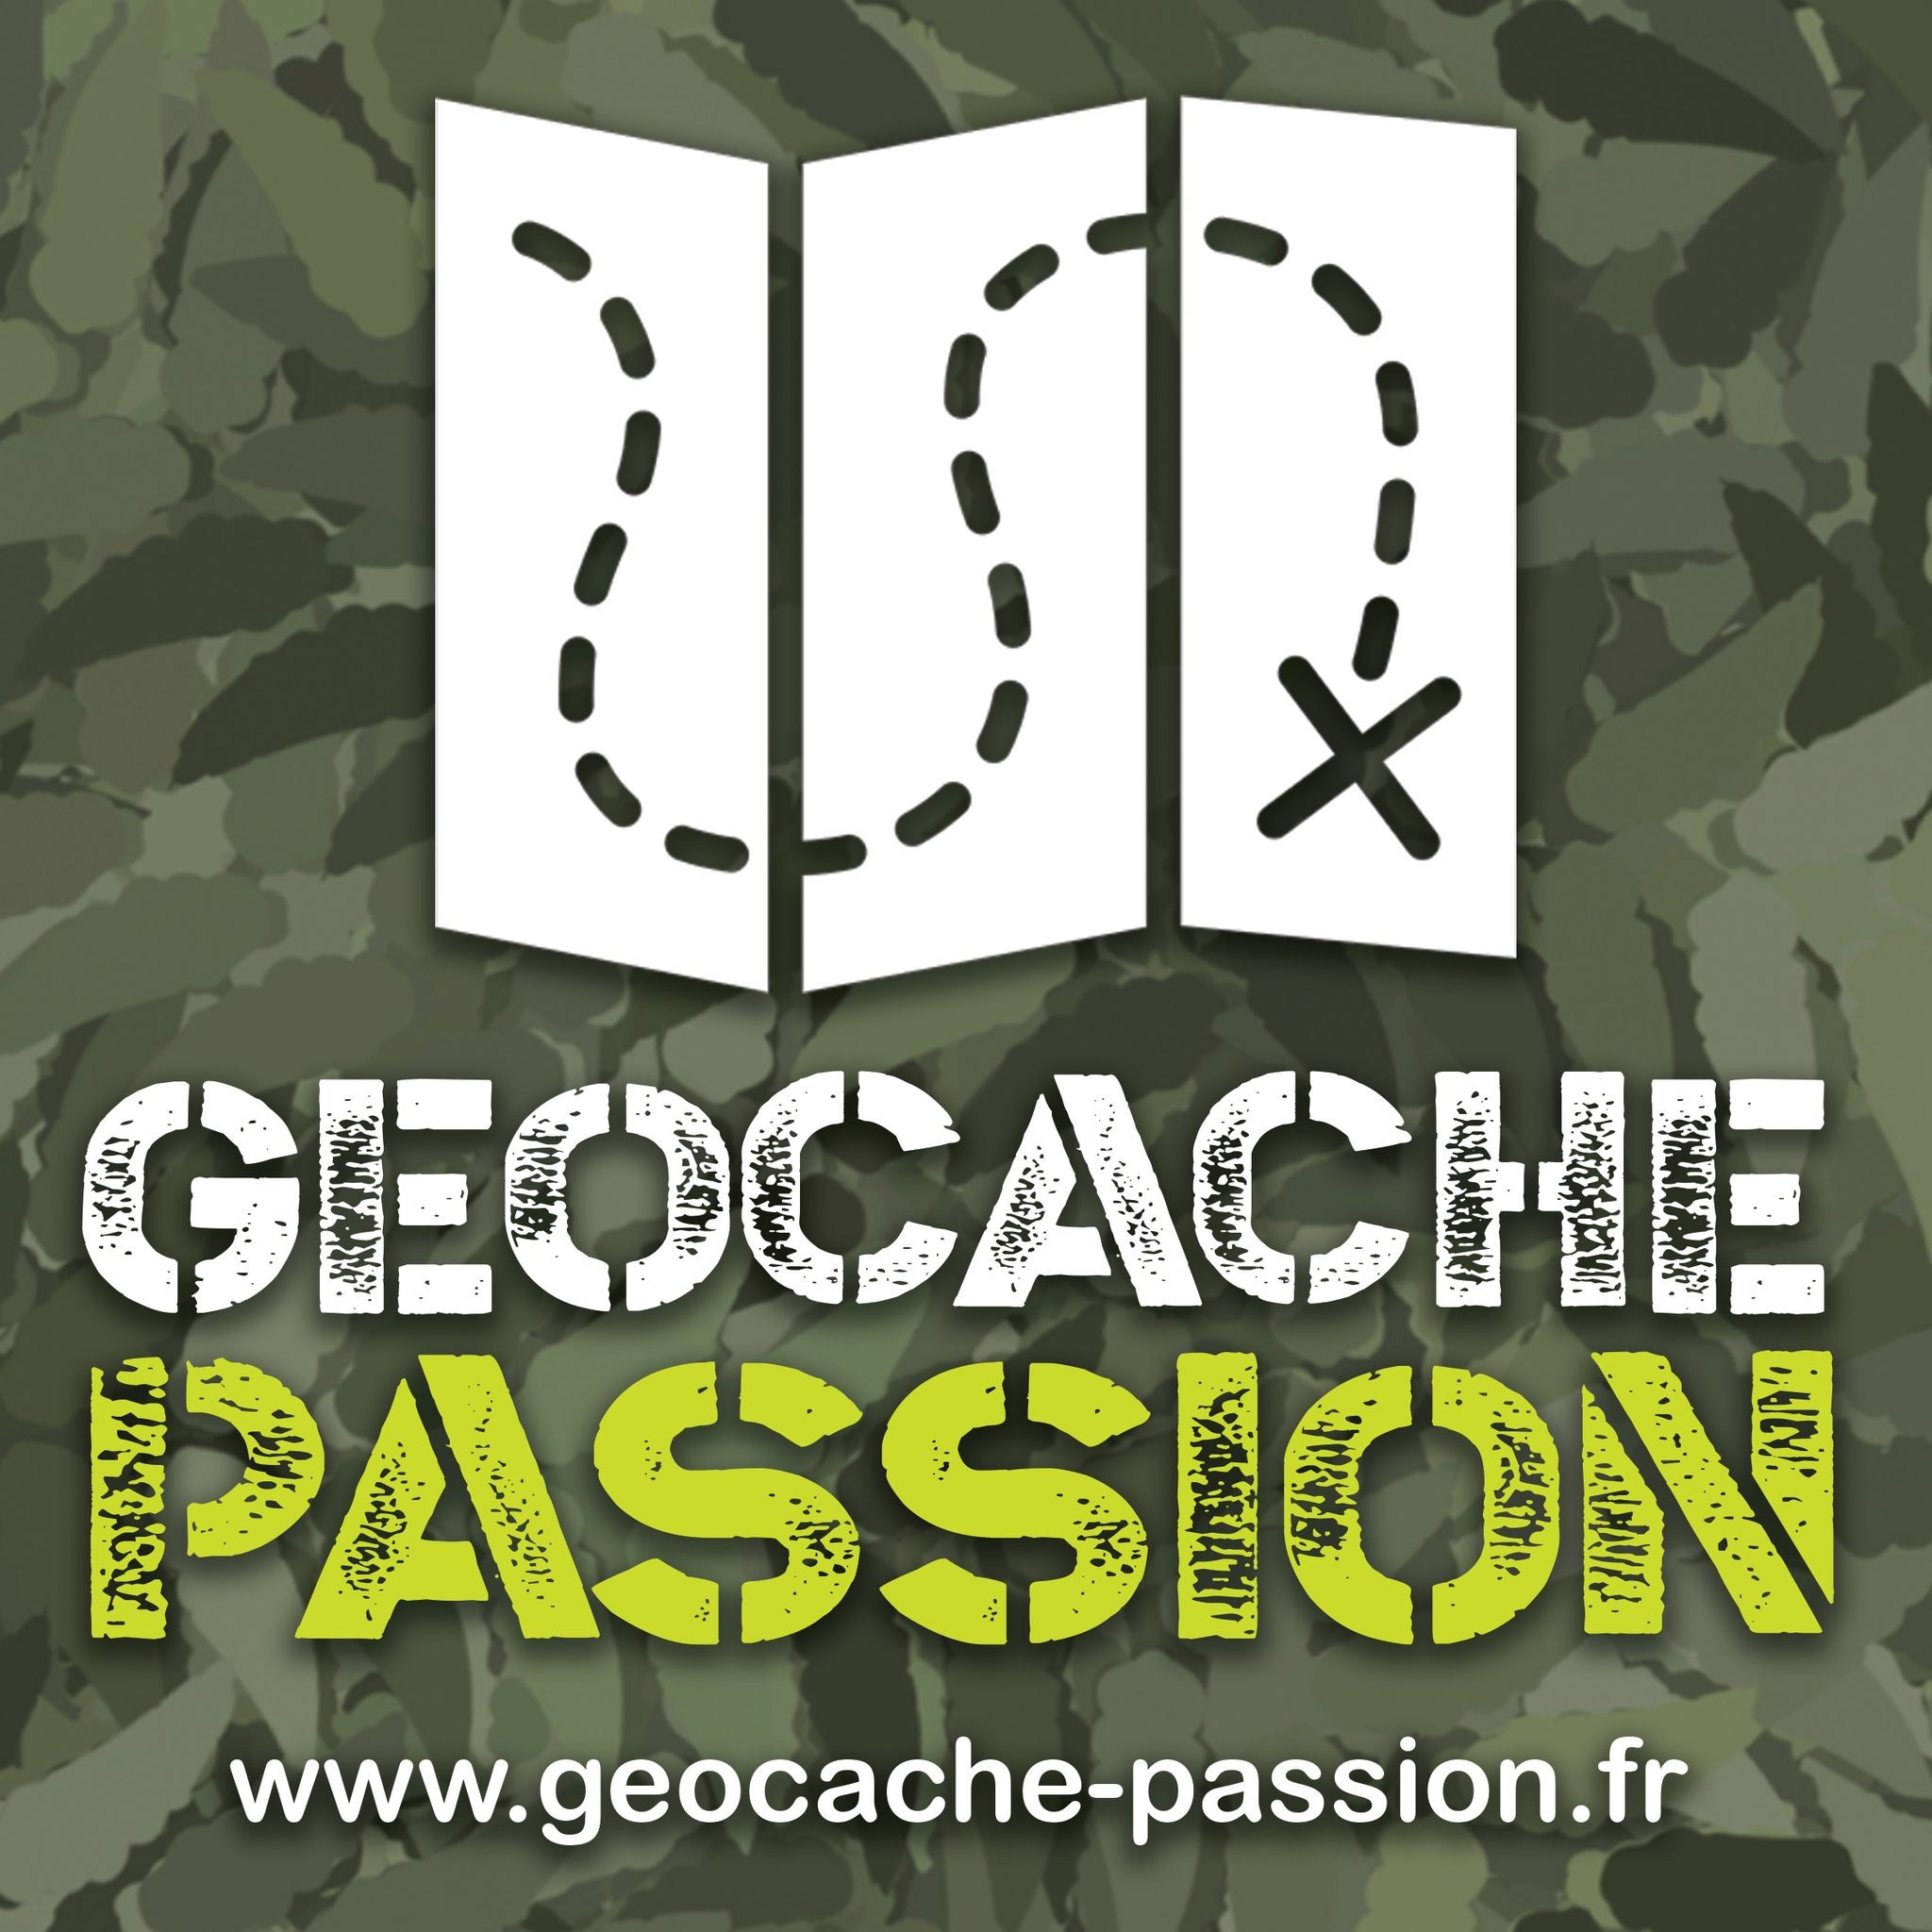 parabd.fr / geocache-passion.fr